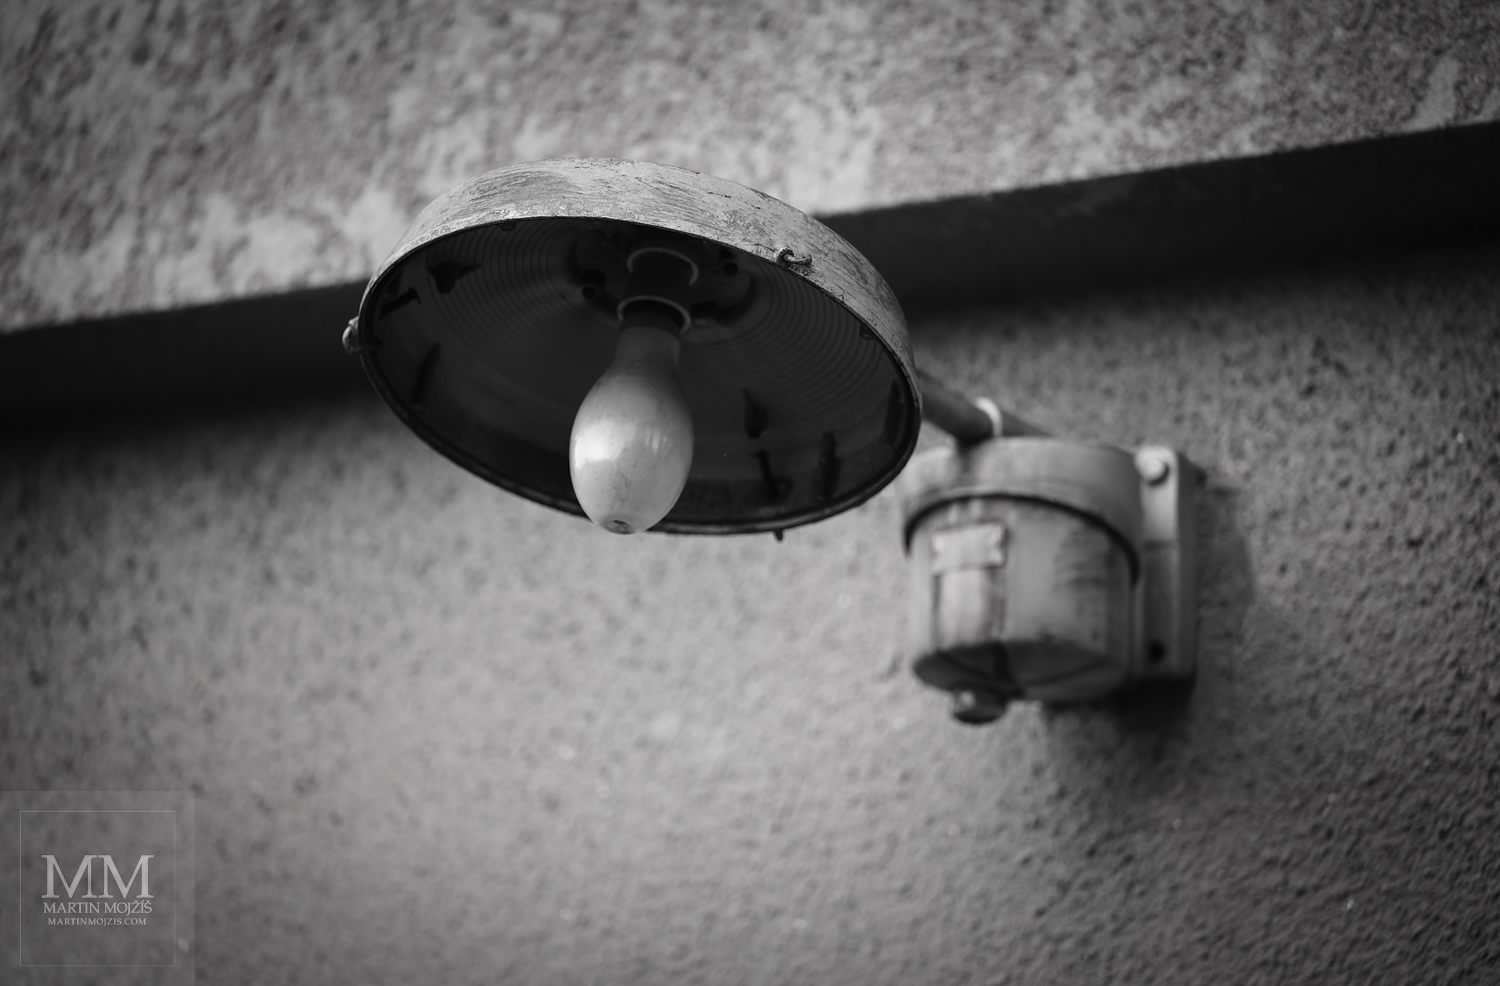 Lampa na stěně. Umělecká černobílá fotografie s názvem U LAMPY. Fotograf Martin Mojžíš.